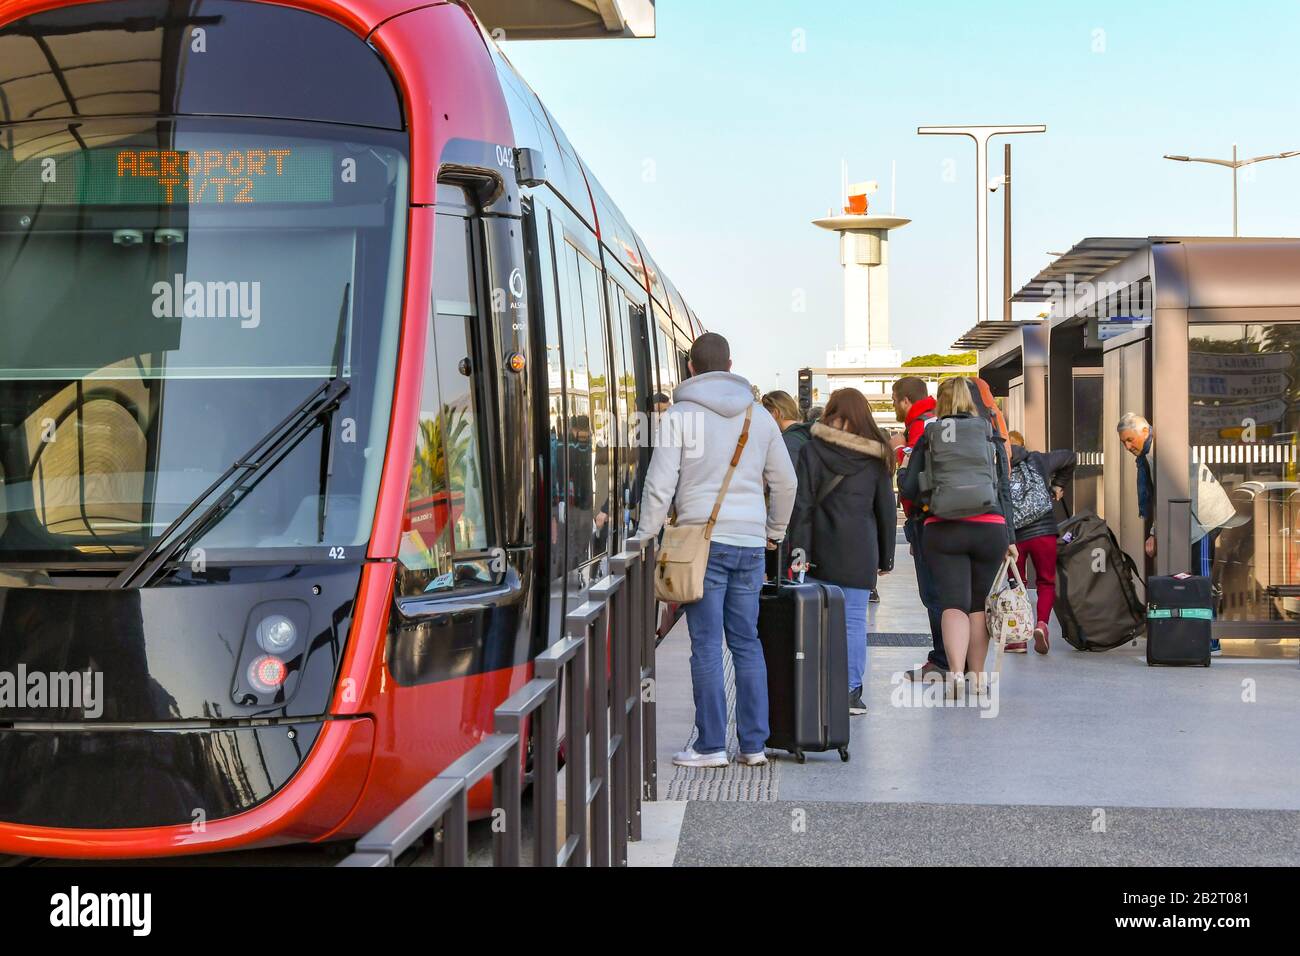 Netter FLUGHAFEN, FRANKREICH - APRIL 2019: Menschen, die mit einer Straßenbahn in das neue U-Bahn-System in Nizza an der Flughafenstation der Stadt einsteigen Stockfoto